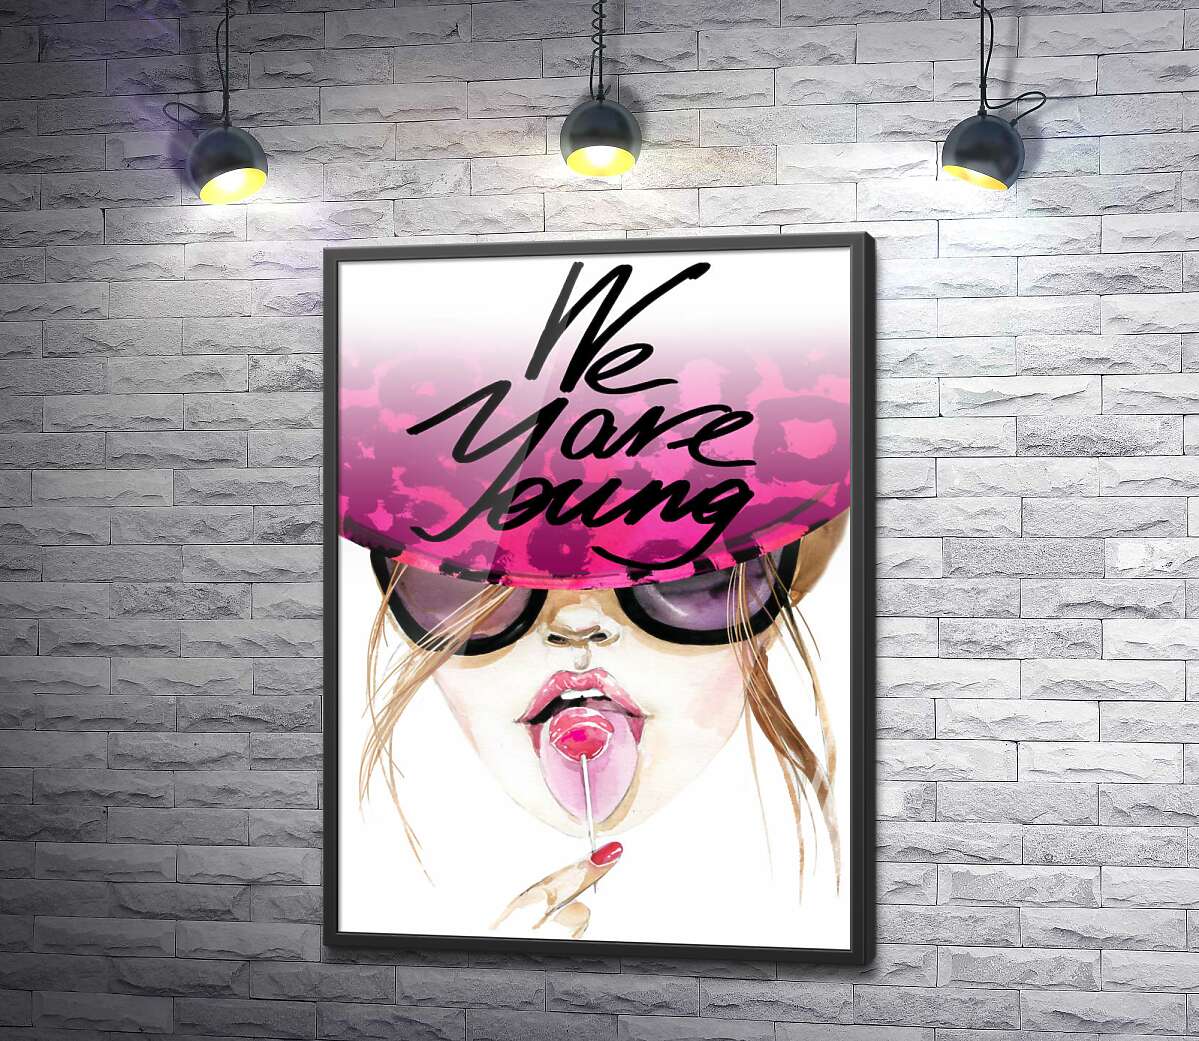 постер Девушка с леденцом в розовой шляпе с надписью "we are young"